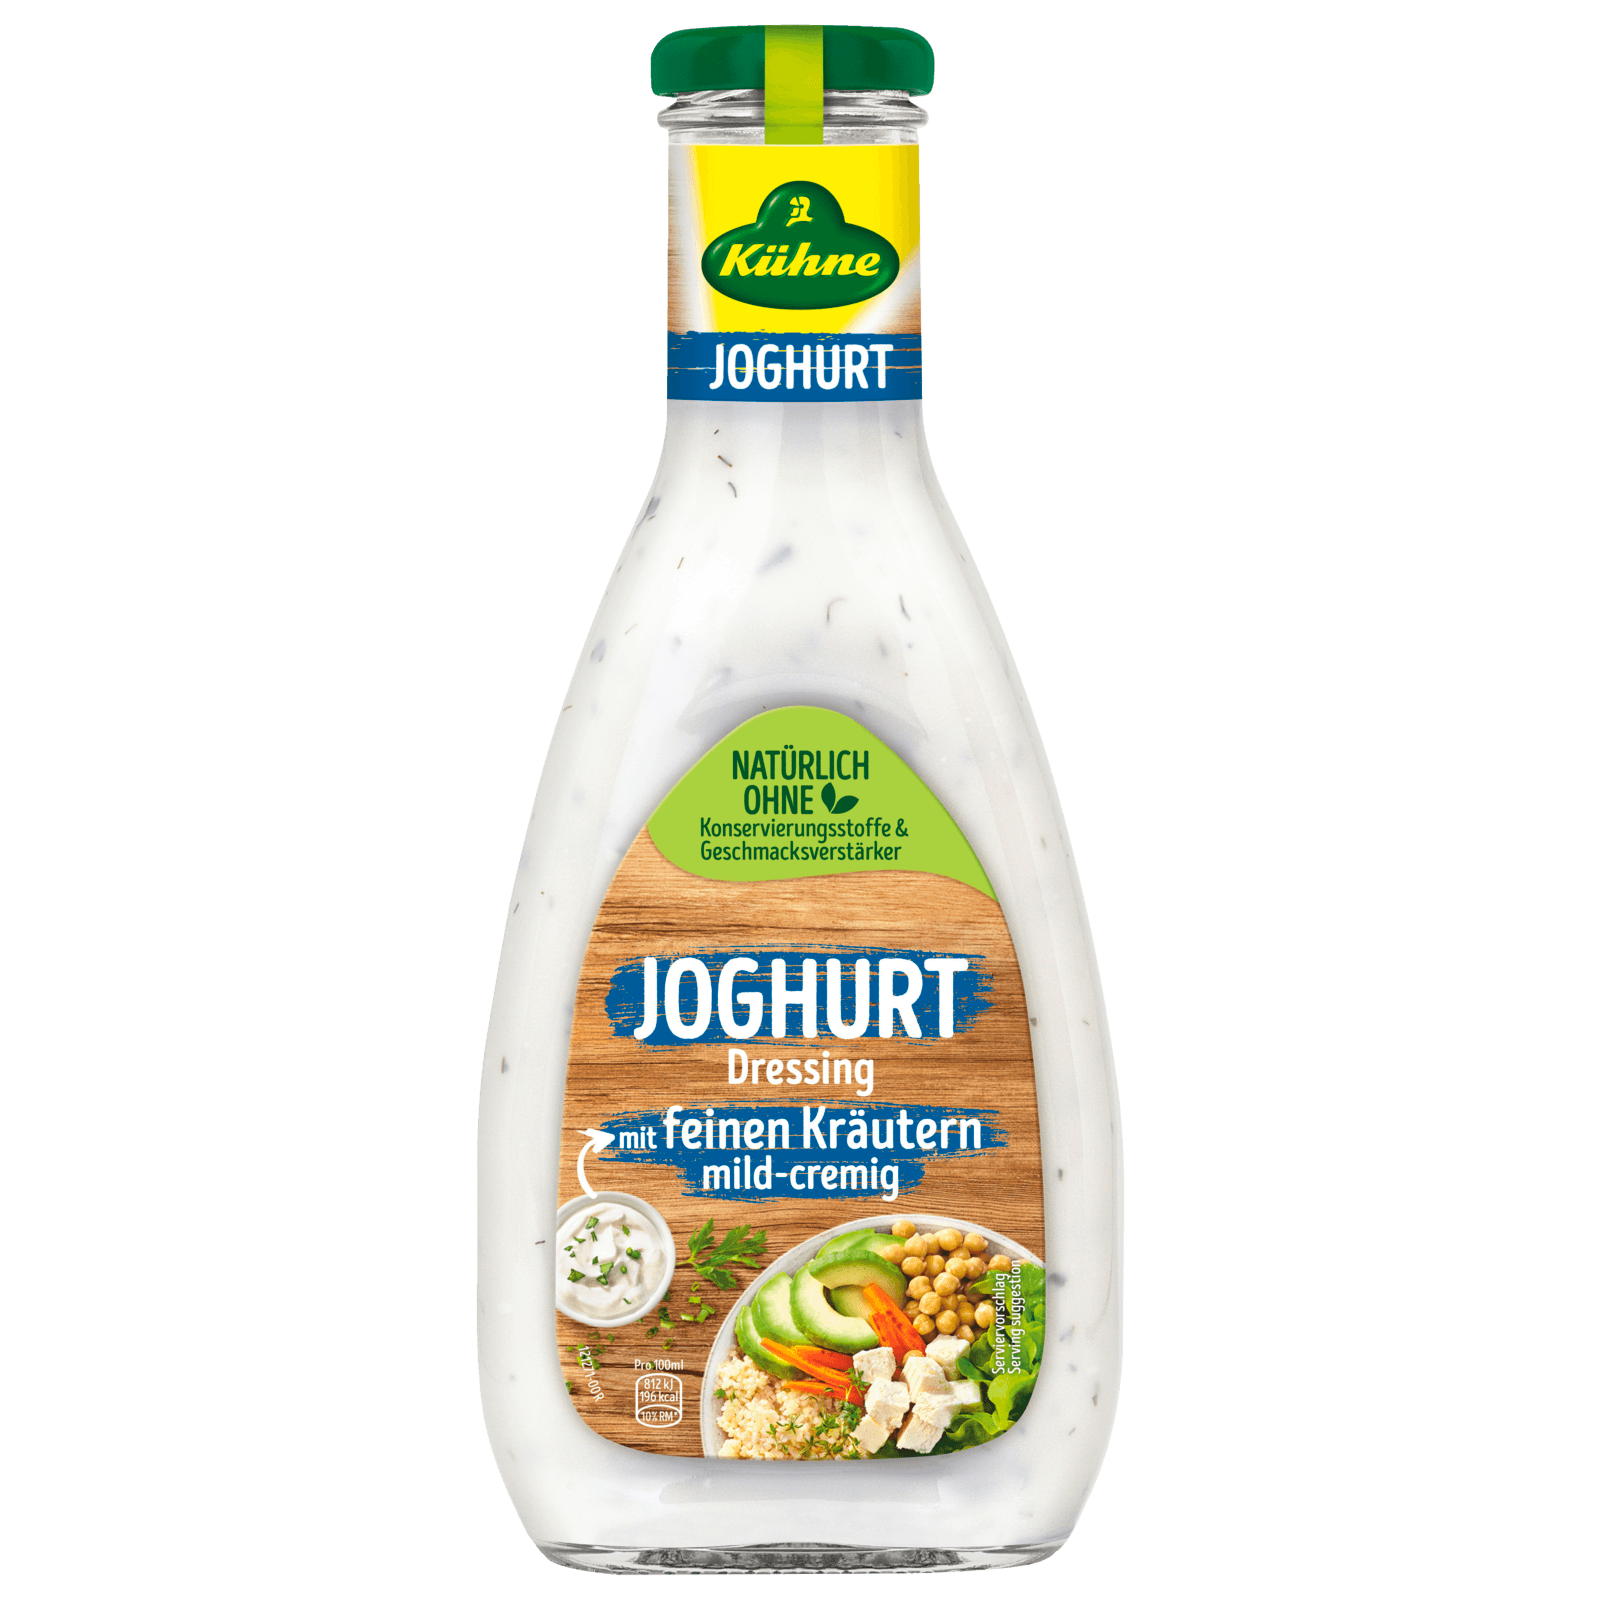 Kühne Joghurt-Dressing 500ml bei REWE online bestellen!